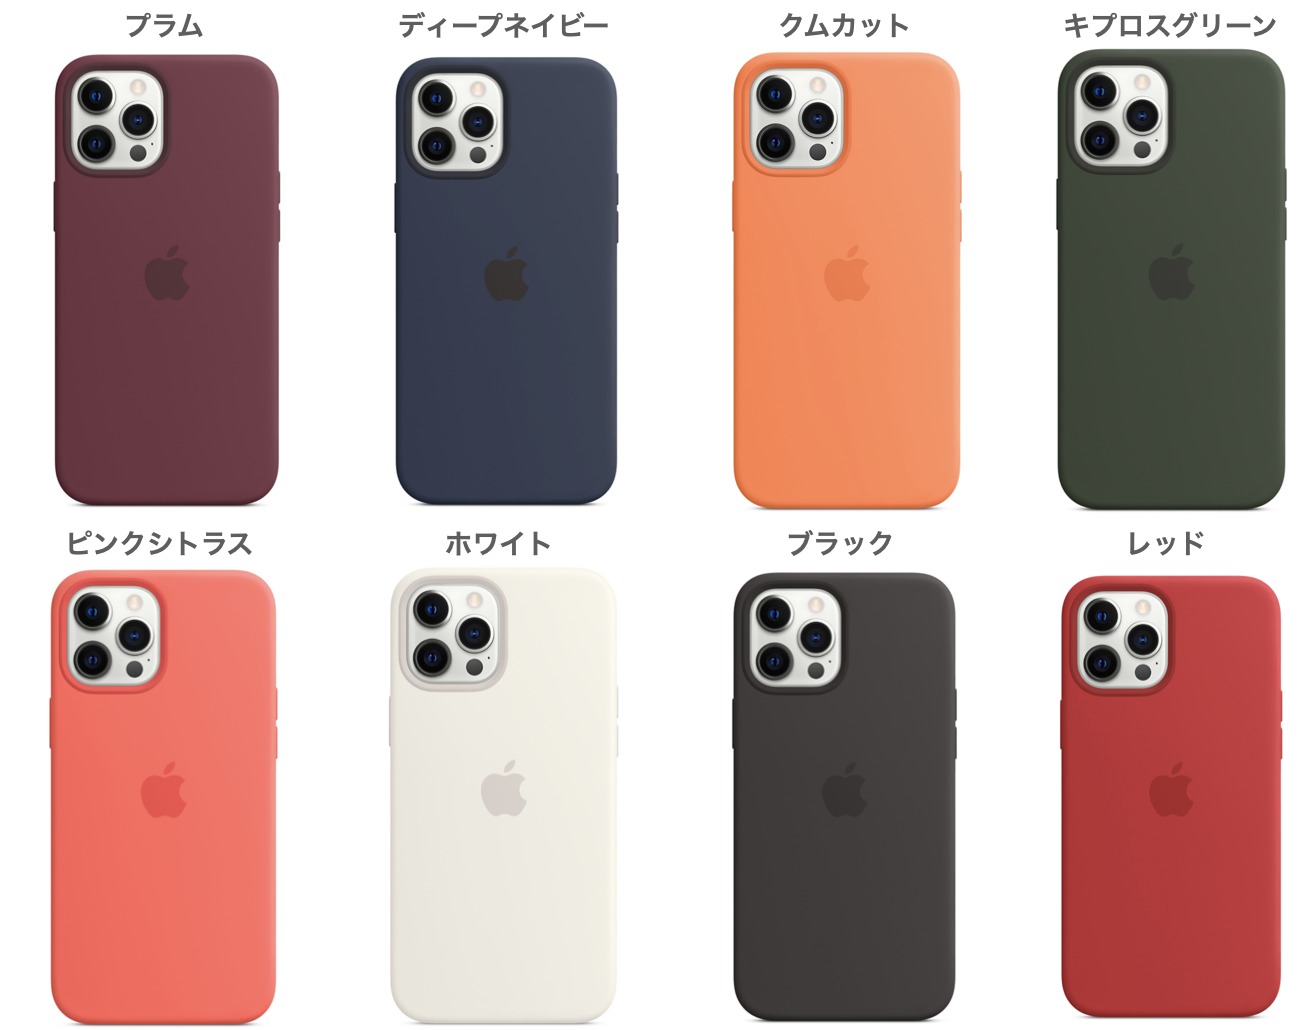 iPhone12シリーズApple純正シリコンケース・レザーケース・クリアケース紹介